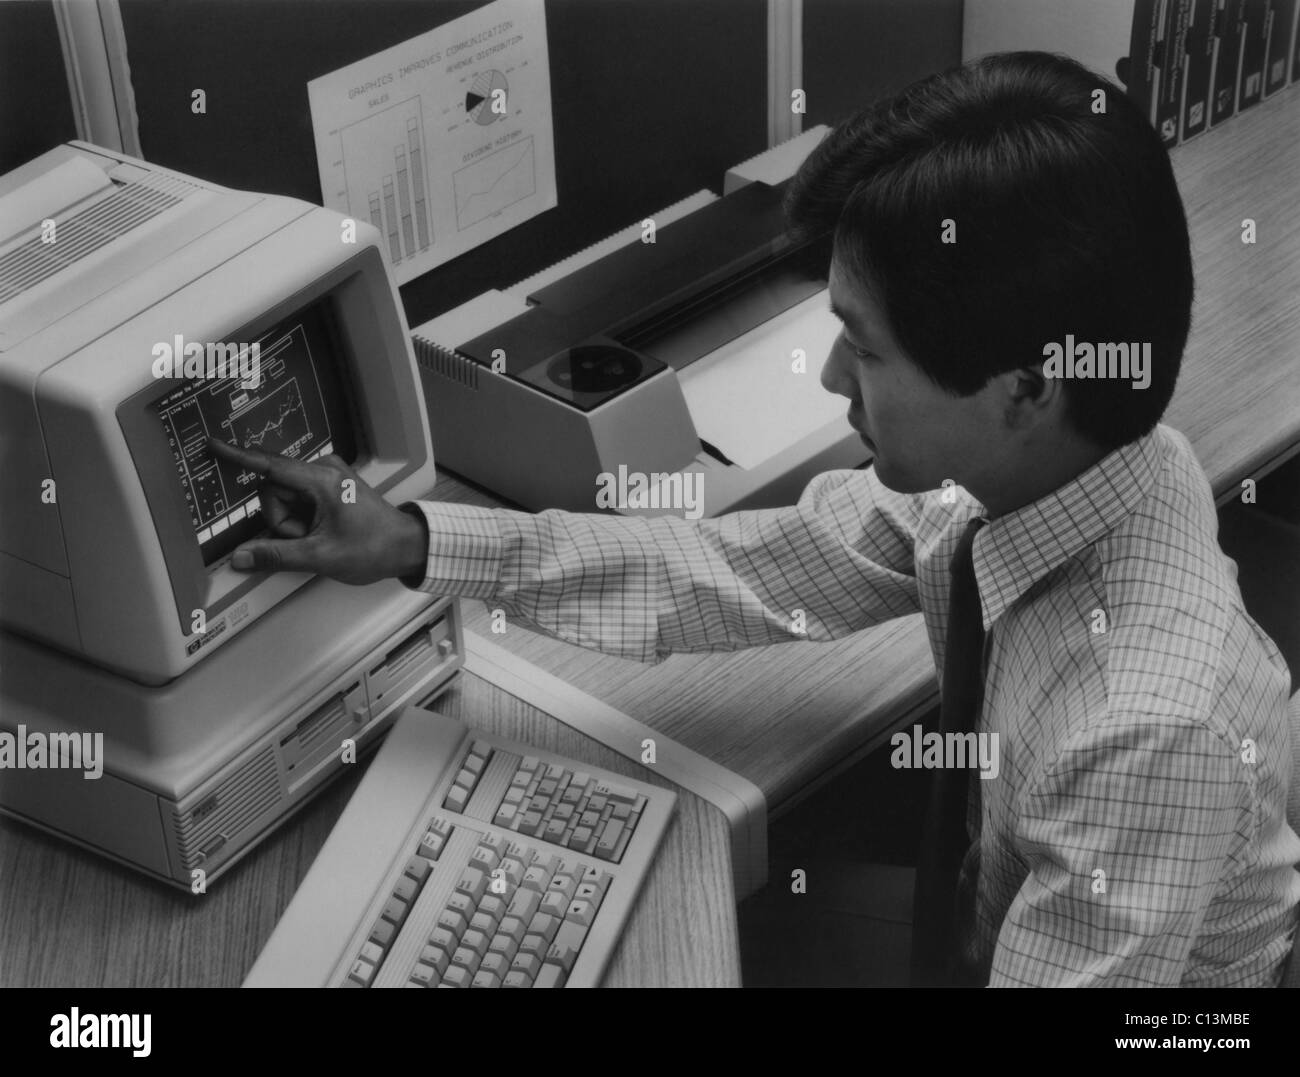 Il 1983 Hewlett Packard-150 personal computer presentava uno schermo sensibile al tocco. È utilizzato un sistema operativo MS-DOS un Intel 8088 a microprocessore e duello 3-1/2 pollici floppy-disk. Foto Stock